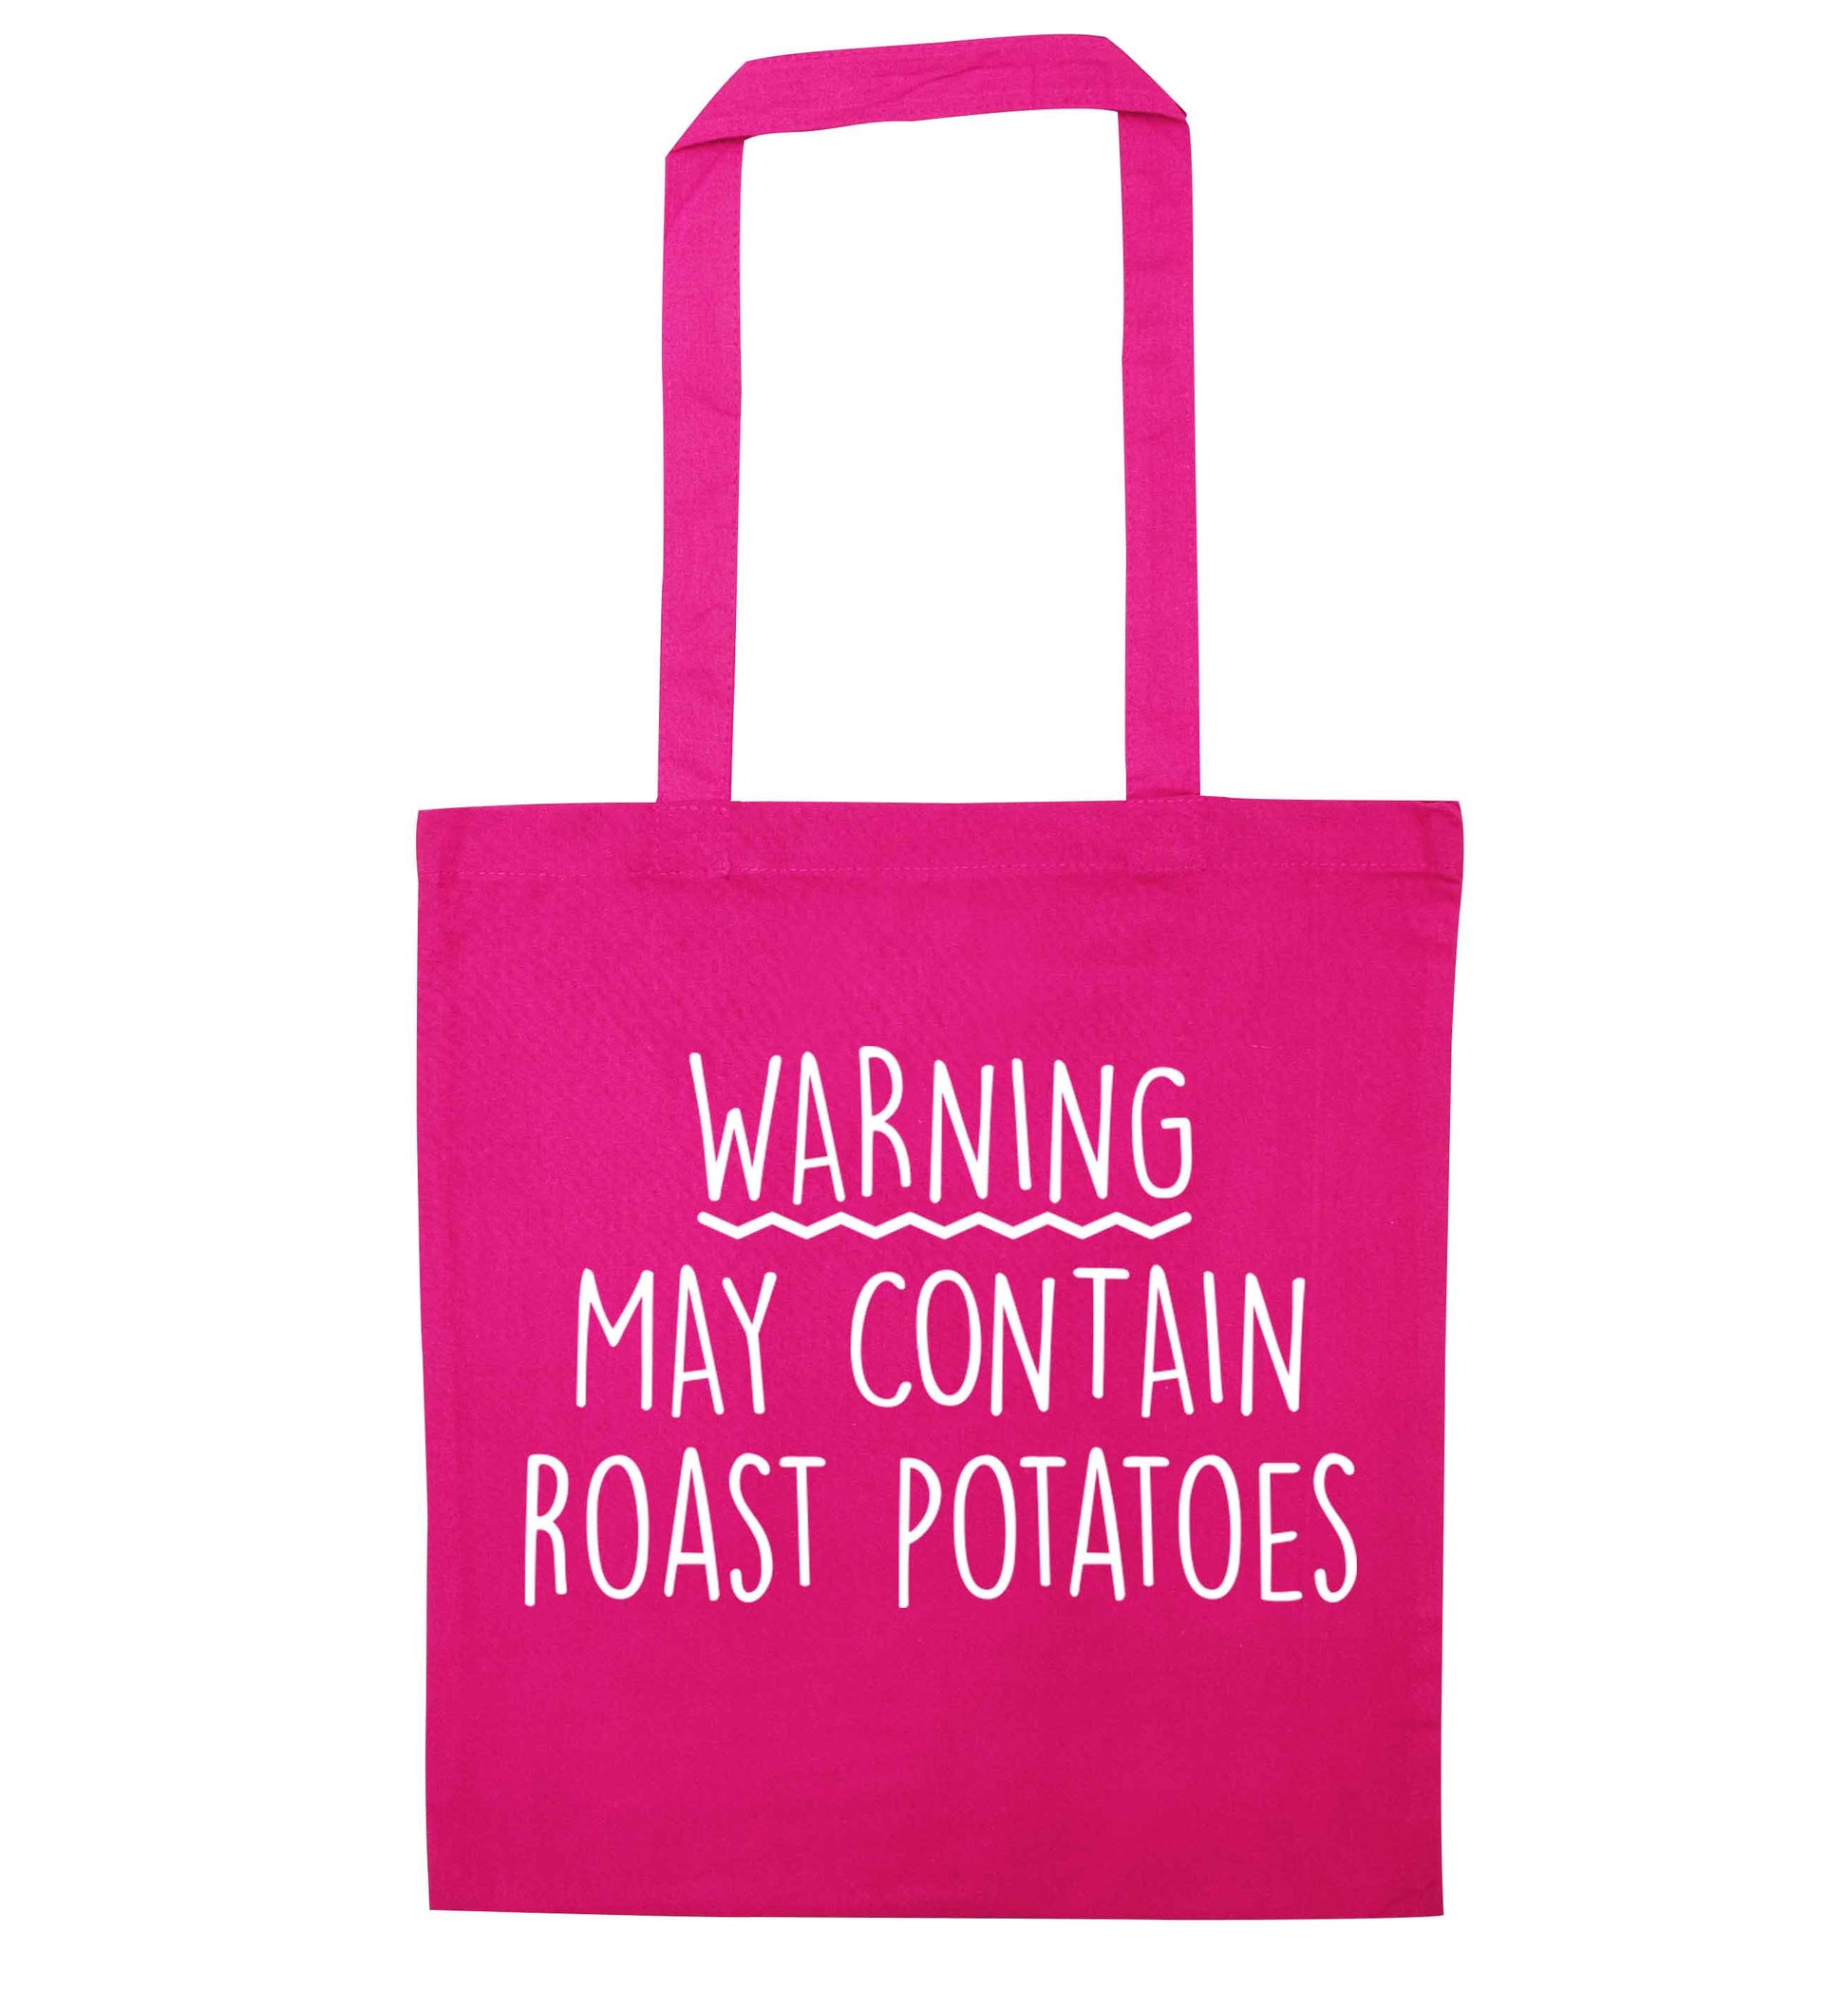 Warning may containg roast potatoes pink tote bag